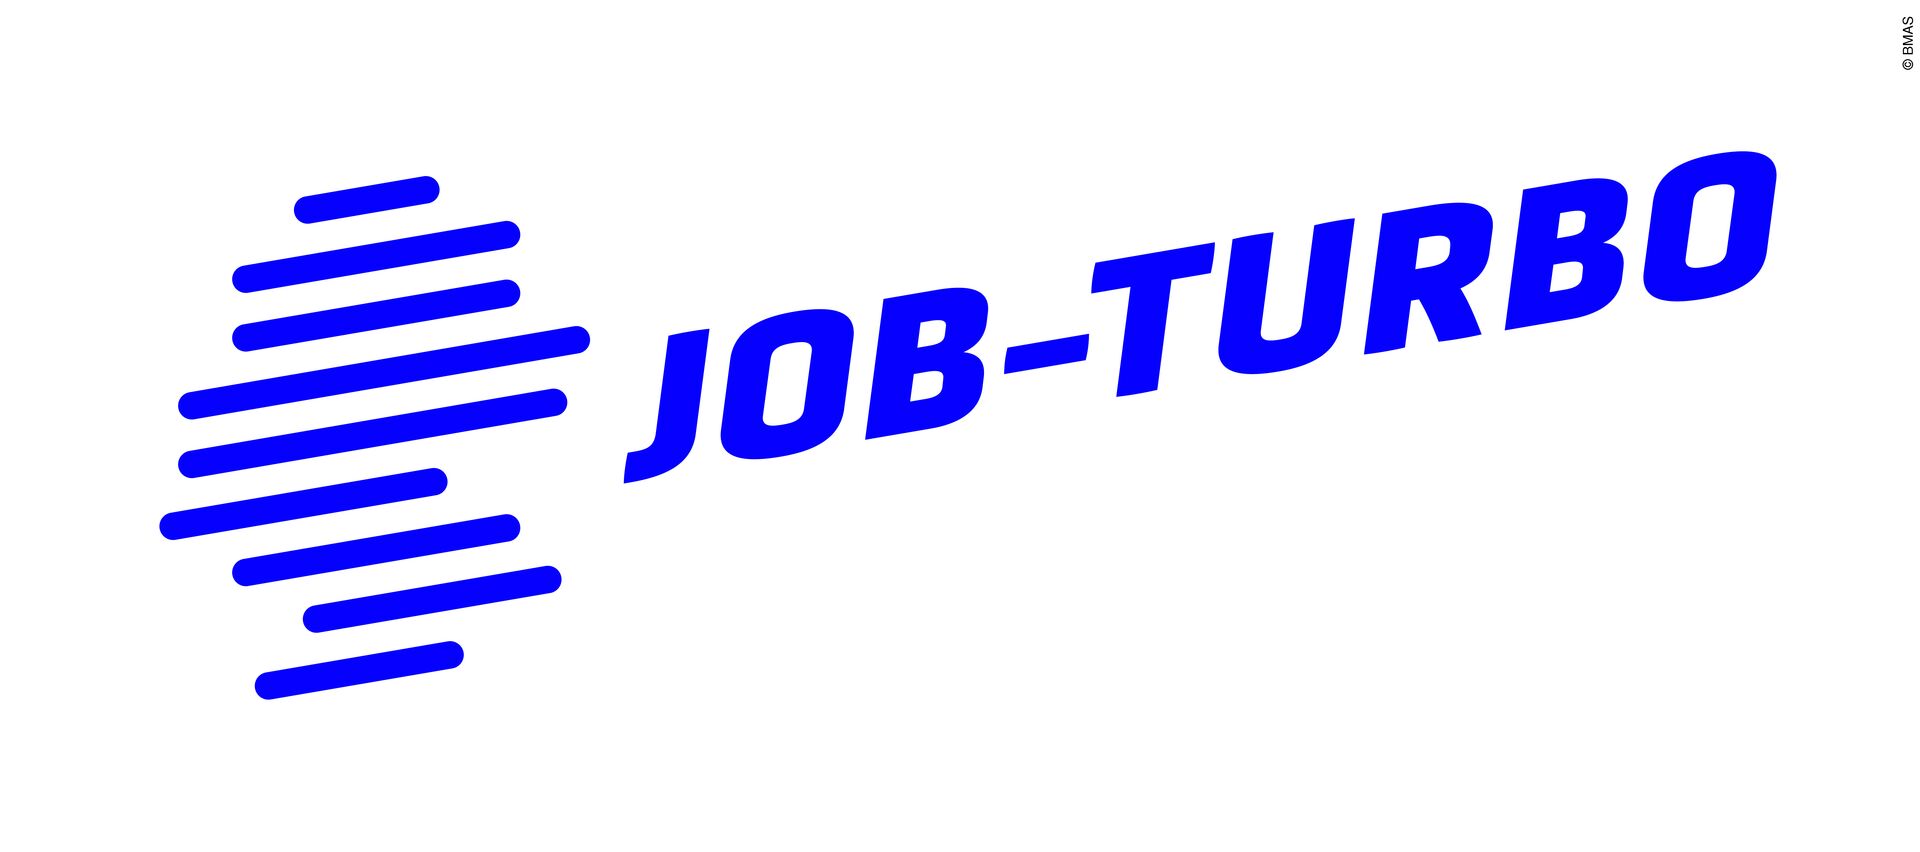 Zu sehen ist das Logo des Jobturbo: Eine schraffierte Deutschlandkarte und der Schriftzug Job-Turbo